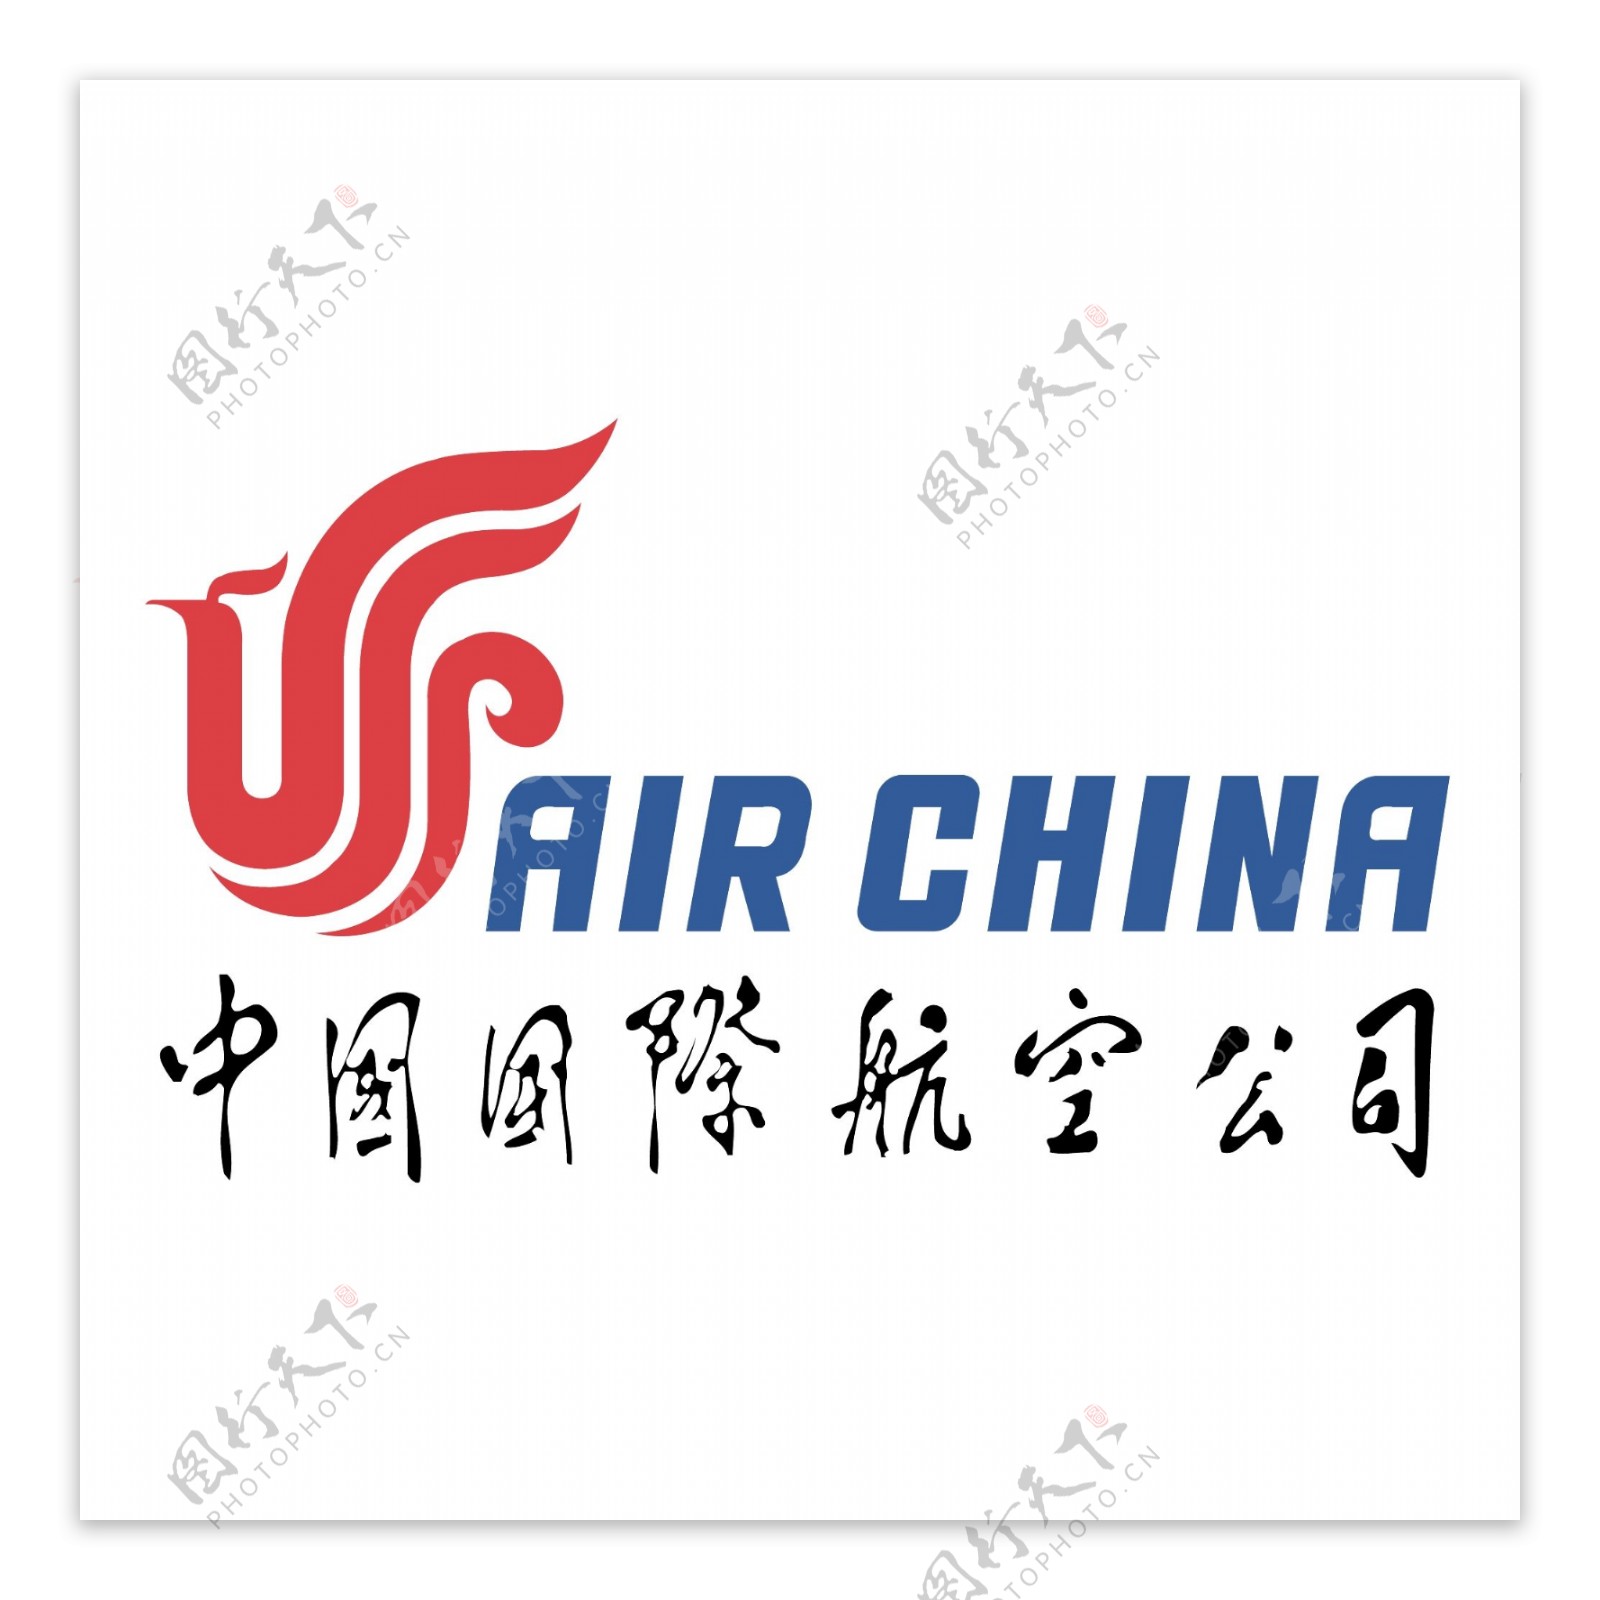 中国国际航空图片